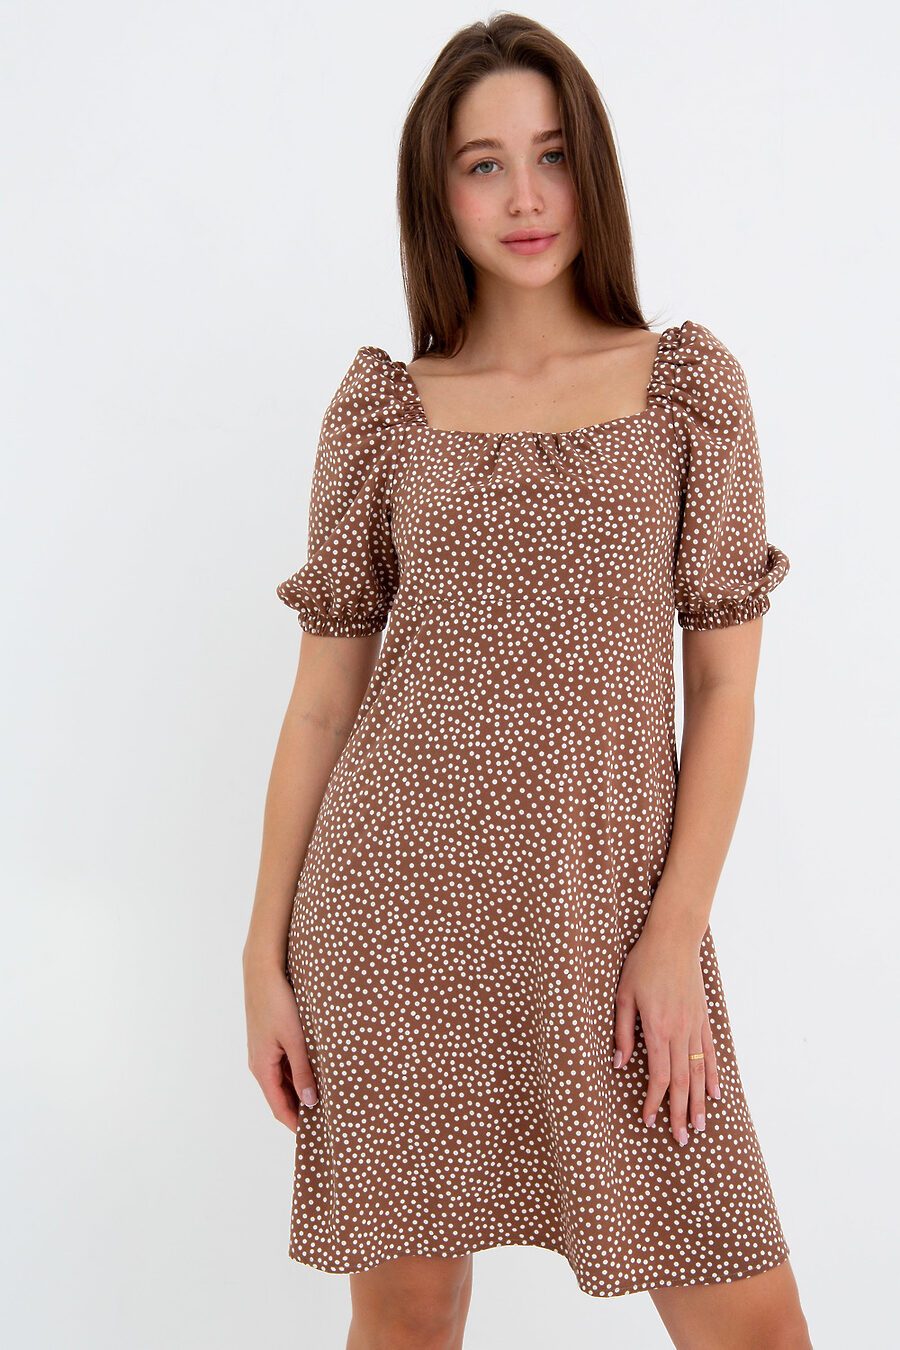 Платье П-5 для женщин НАТАЛИ 775465 купить оптом от производителя. Совместная покупка женской одежды в OptMoyo